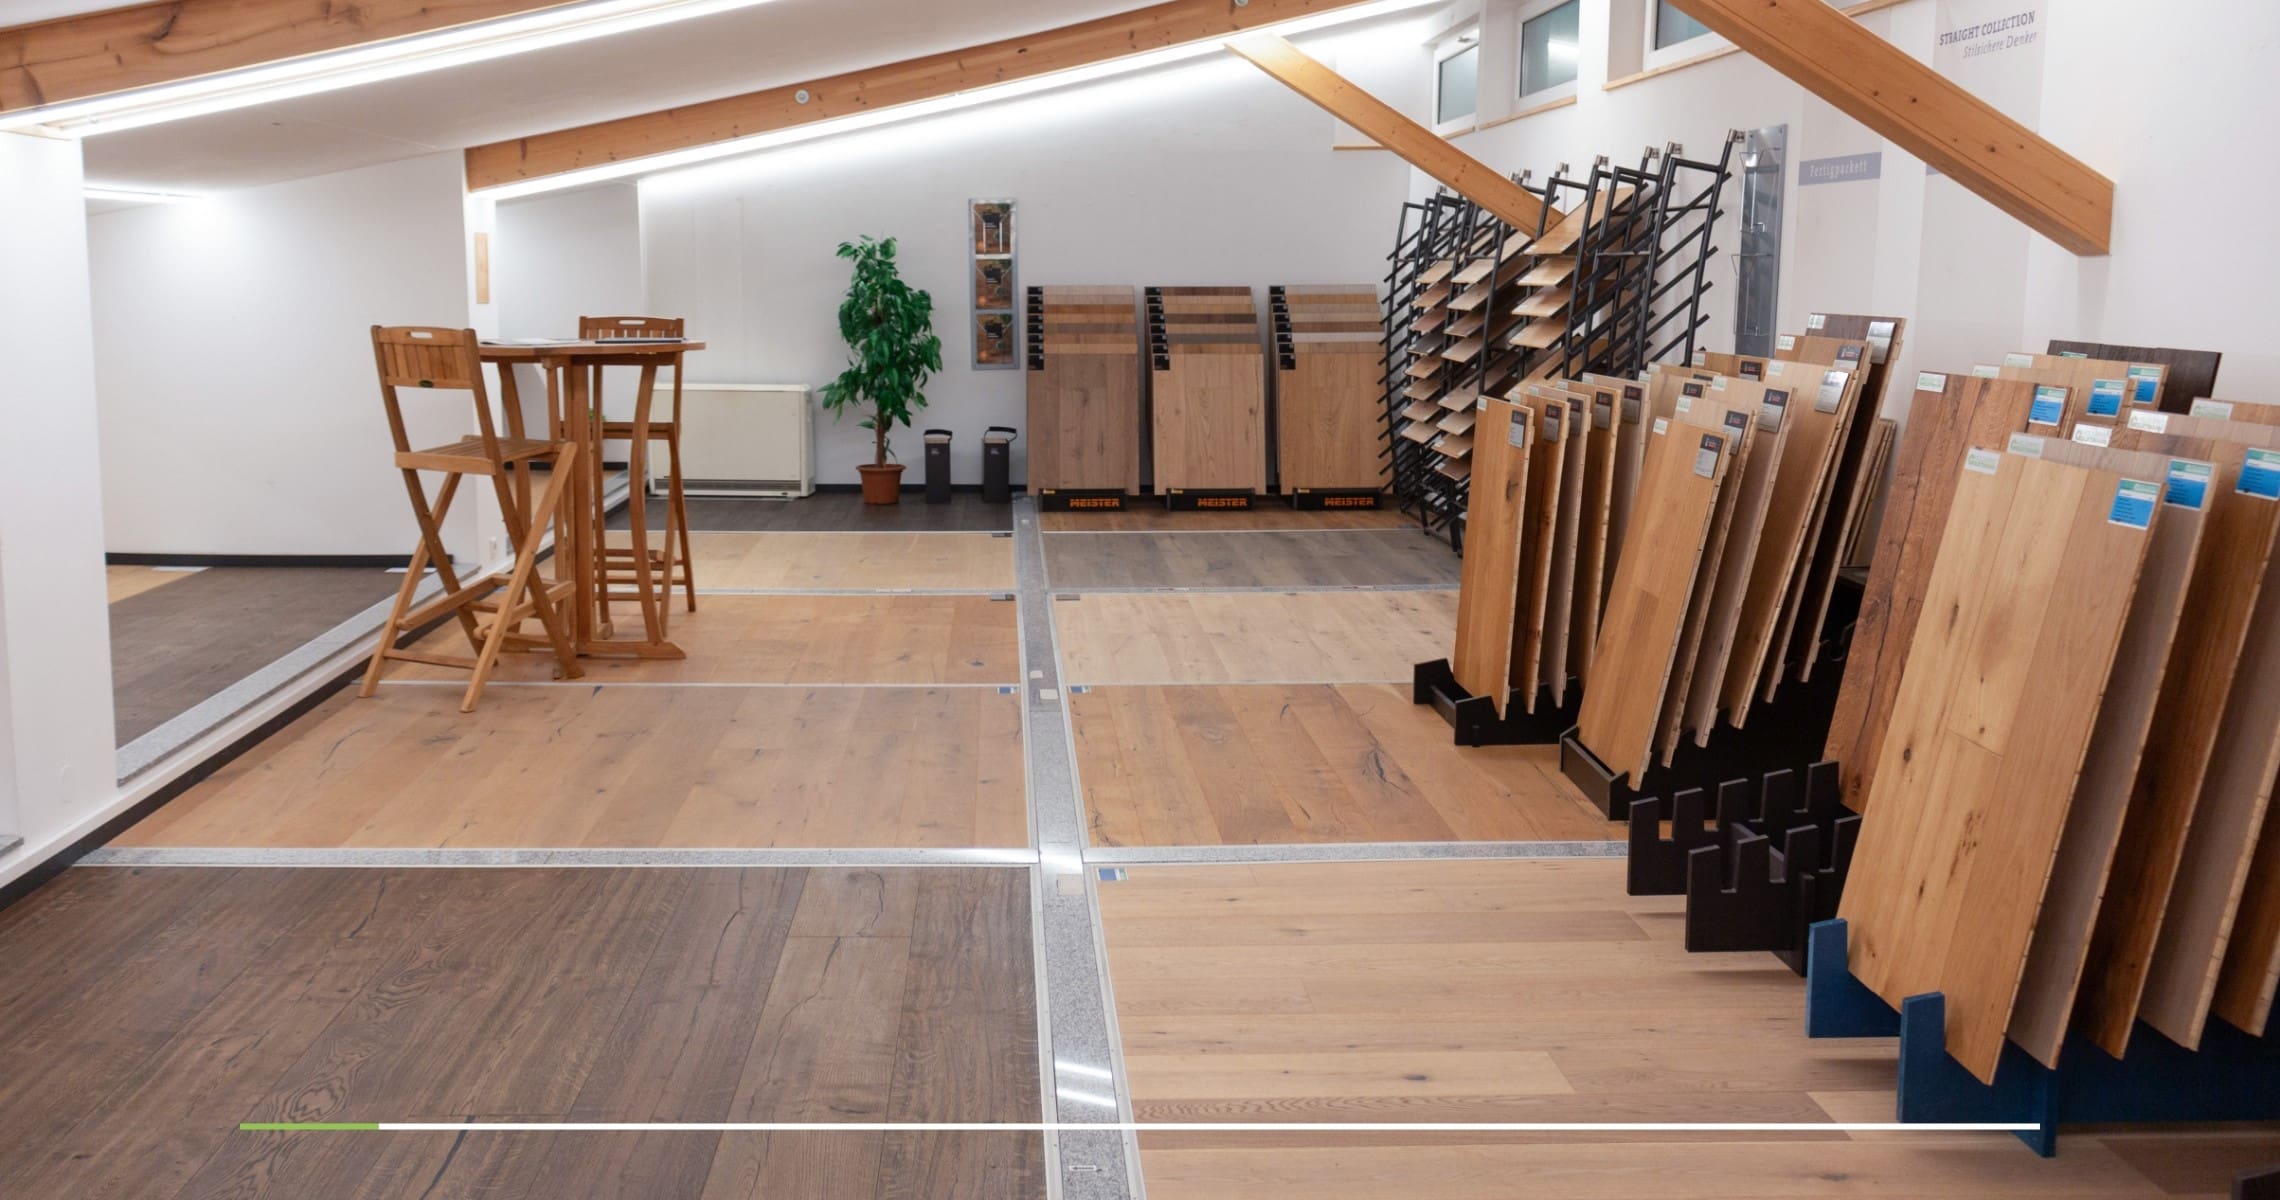 Parkettboden für den Innenausbau des Eigenheims in der Musterausstellung in Wipfeld.